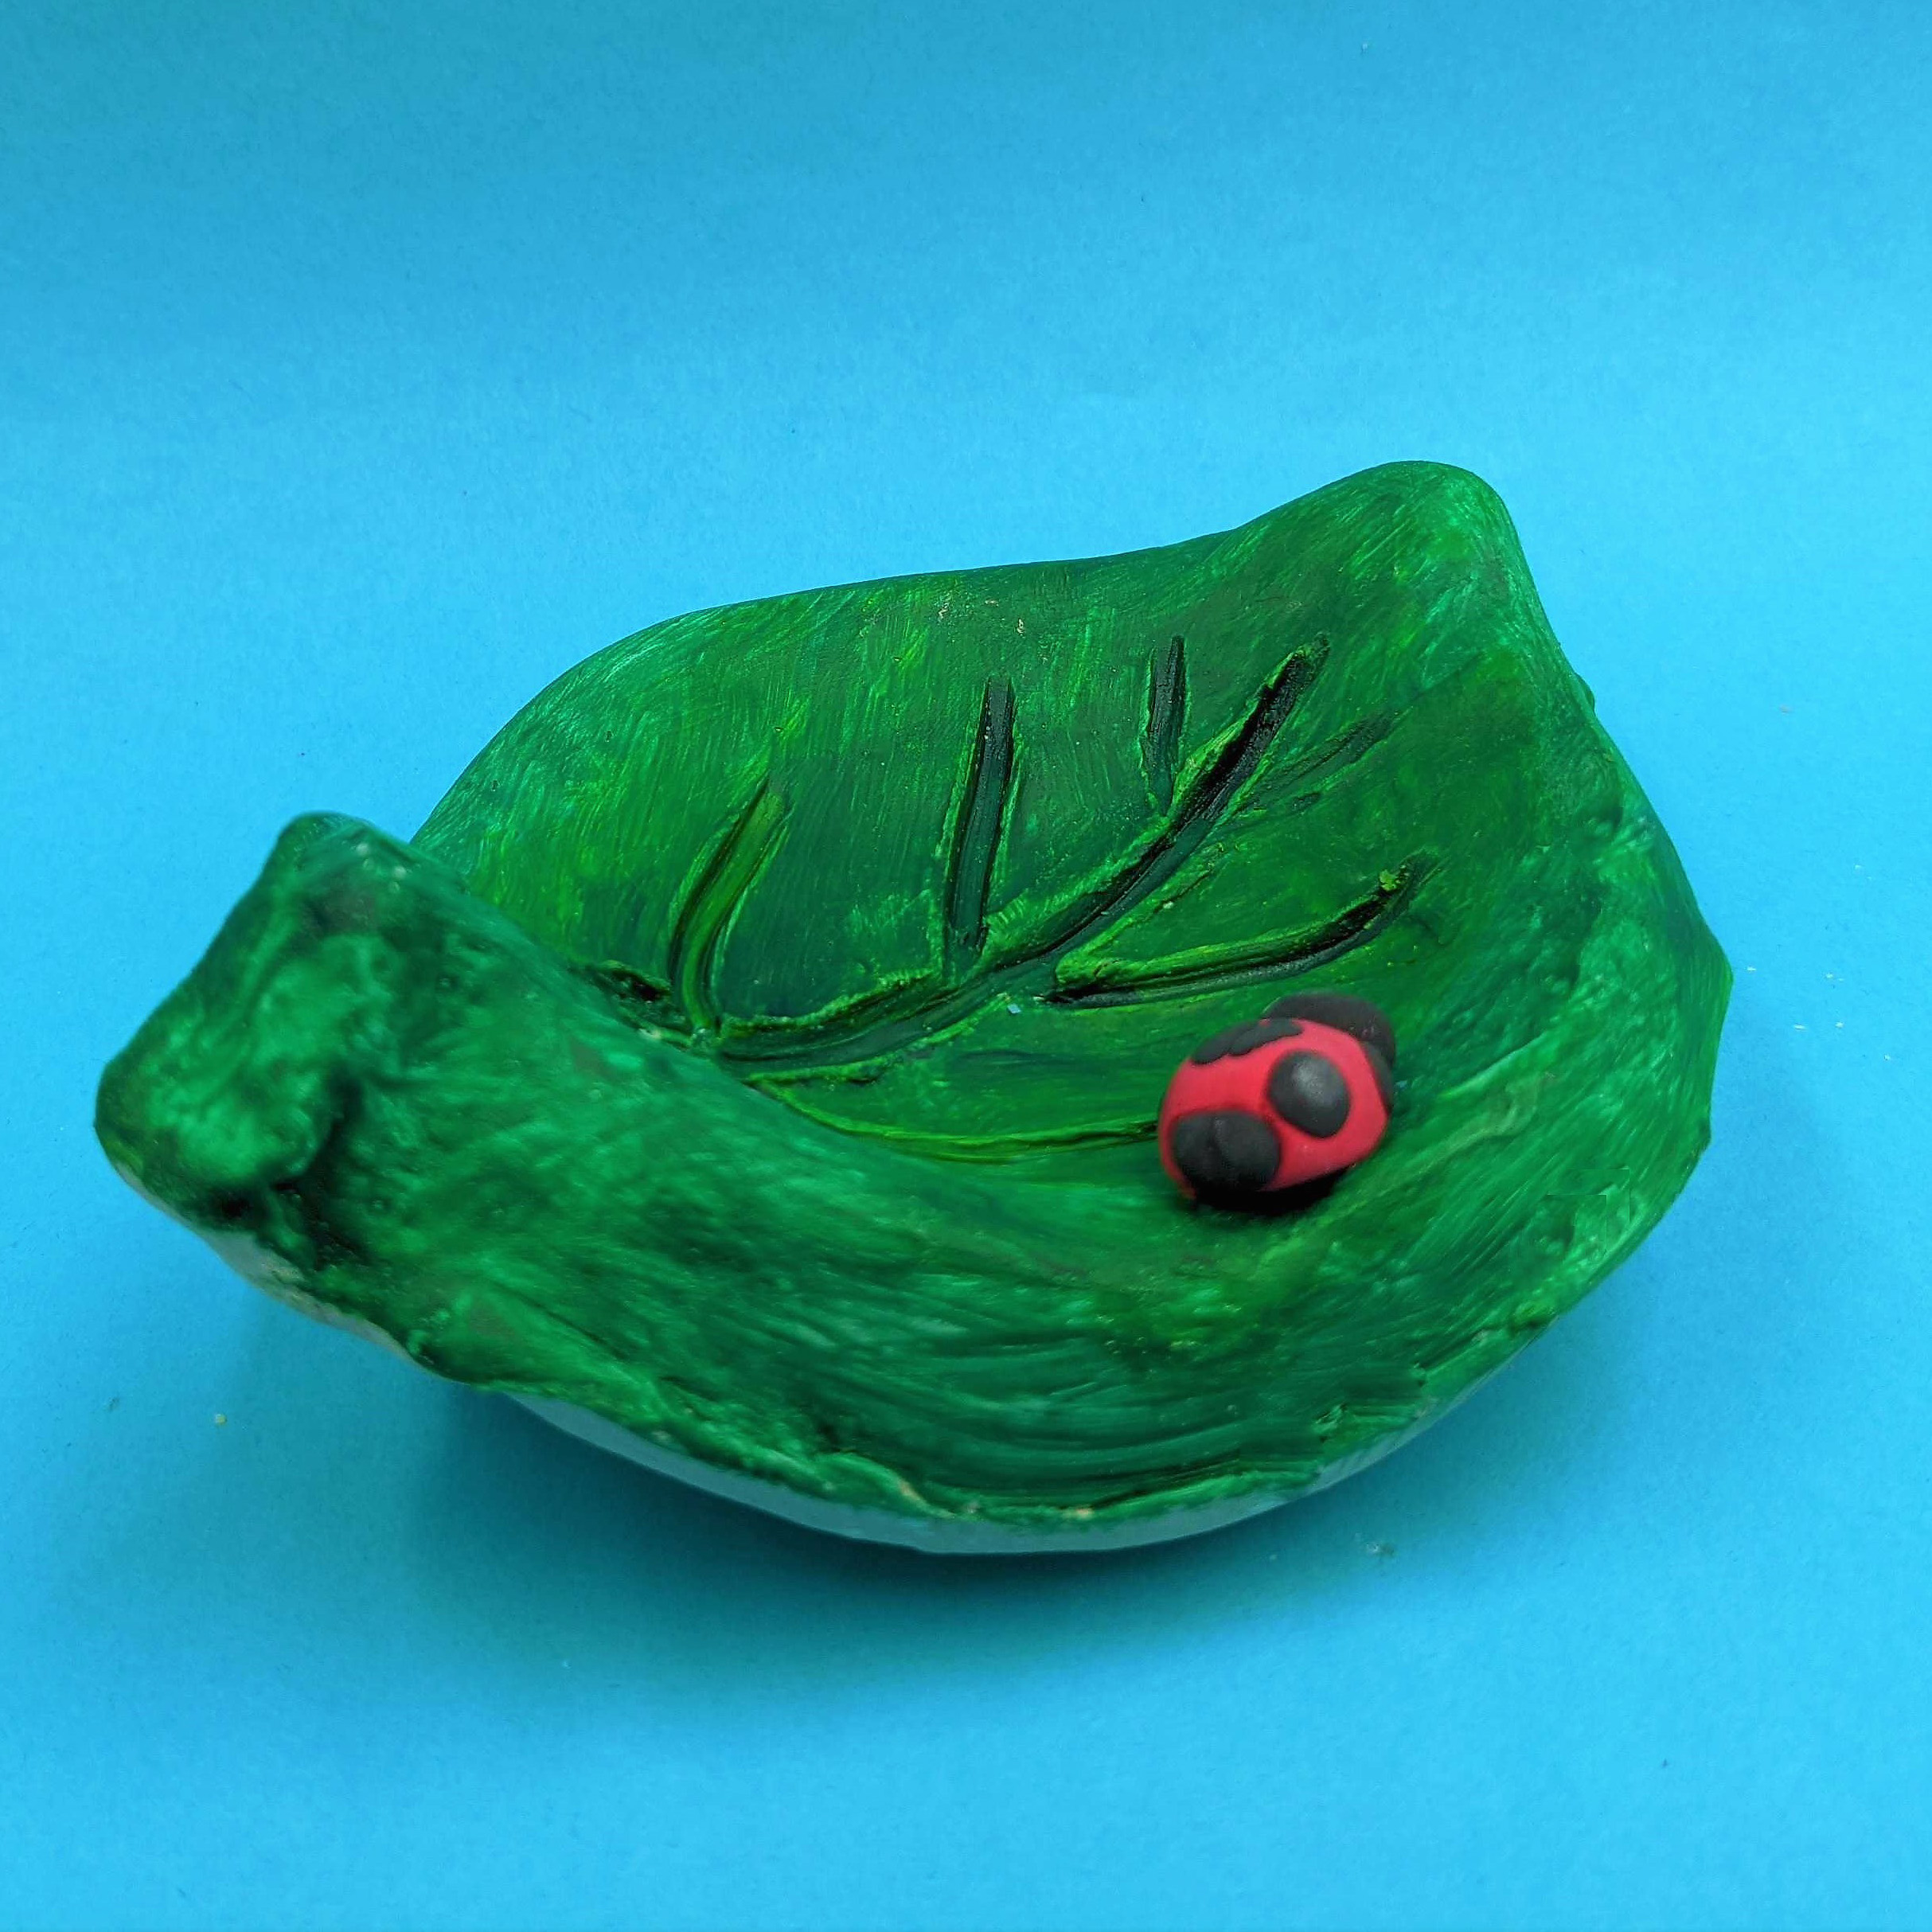 Kidcreate Studio - Alexandria, Leaf bowl Art Project